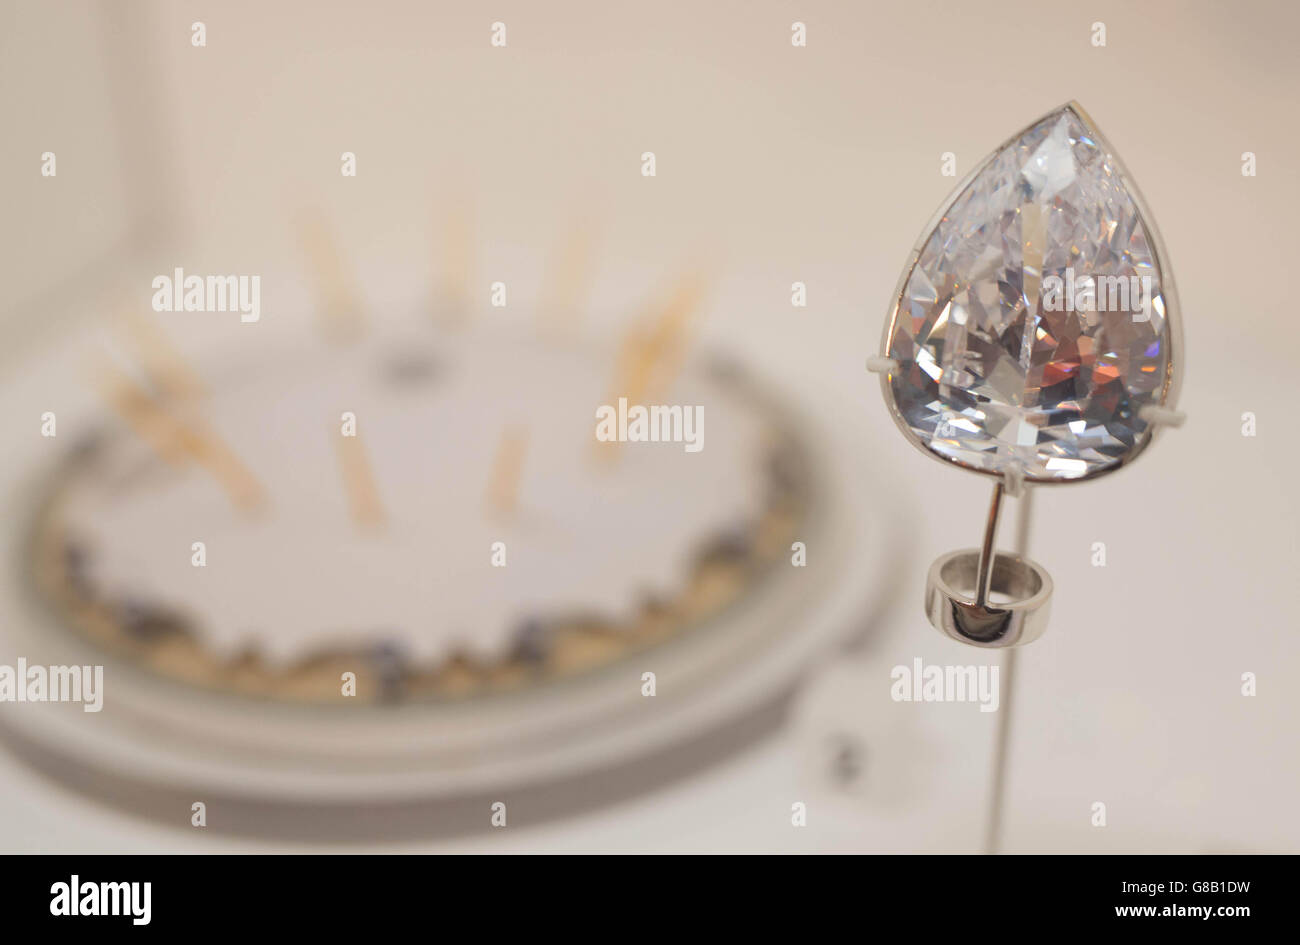 Eine Nachbildung des Millennium Star Diamanten, die während des versuchten Raubüberfalls des Millennium Dome im Jahr 2000 ins Visier genommen wurde und im Rahmen der Ausstellung des Crime Museum Uncovered im Museum of London ausgestellt wird, die am Freitag für die Öffentlichkeit zugänglich ist. Stockfoto